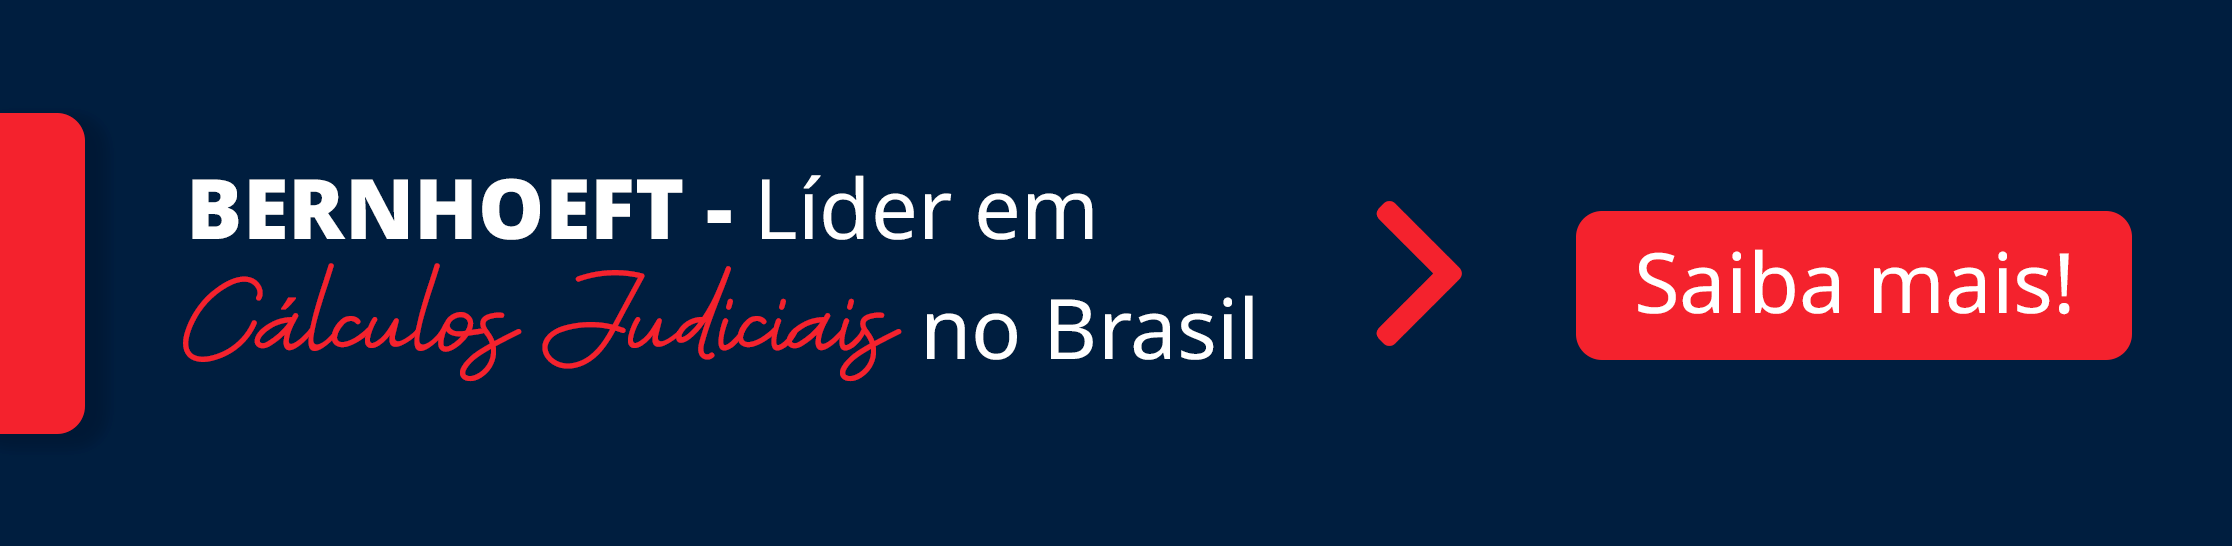 imagem em azul com detalhes em vermelho. frase: Bernhoeft - líder em Cálculos Judiciais no Brasil. Botão vermelho lateral saiba mais.